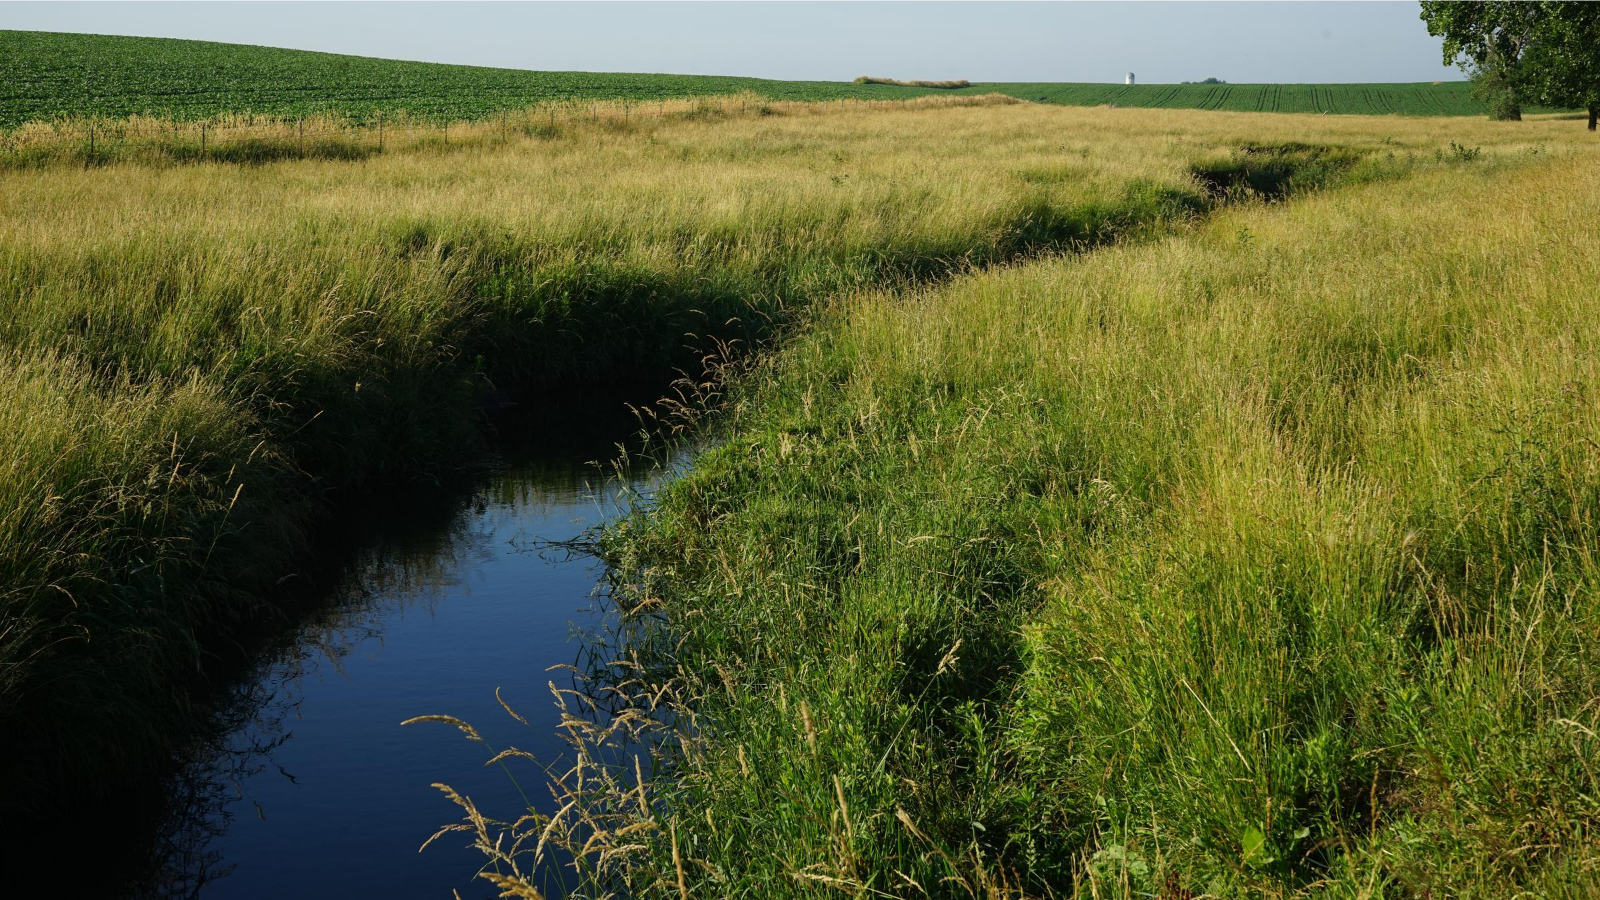 A stream runs alongside Iowa crop fields.